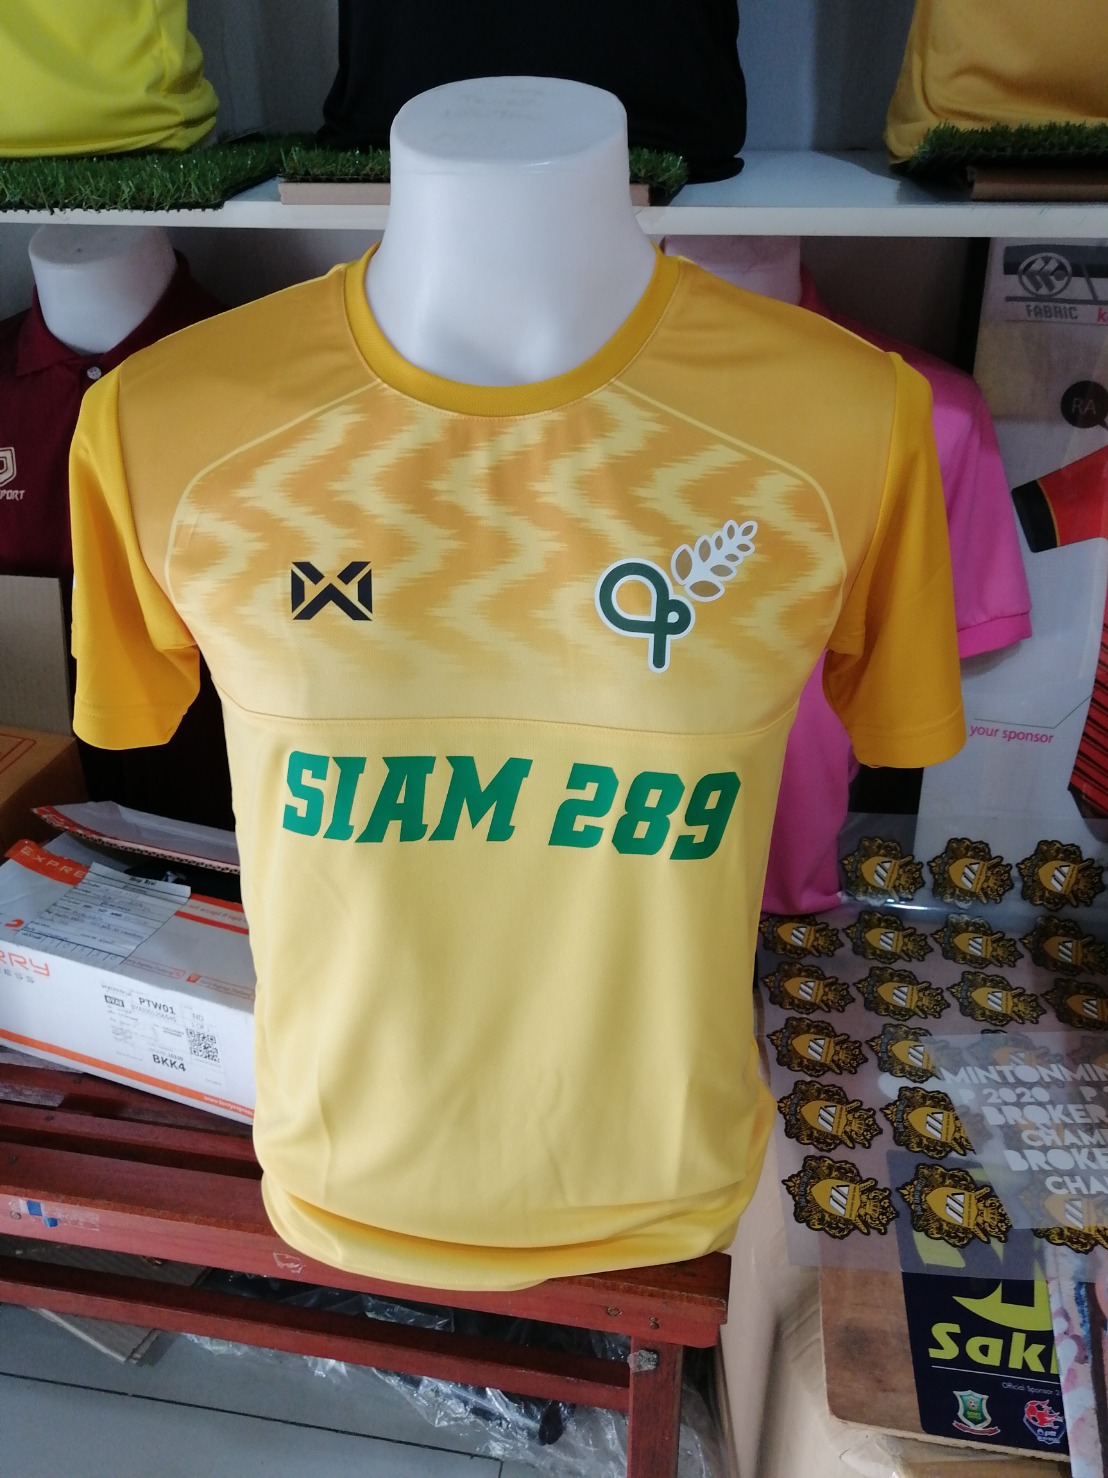 เสื้อฟุตบอล Warrix รุ่น WA-FBA573 ใหม่สุดๆ สีเหลือง ทีม SIAM289